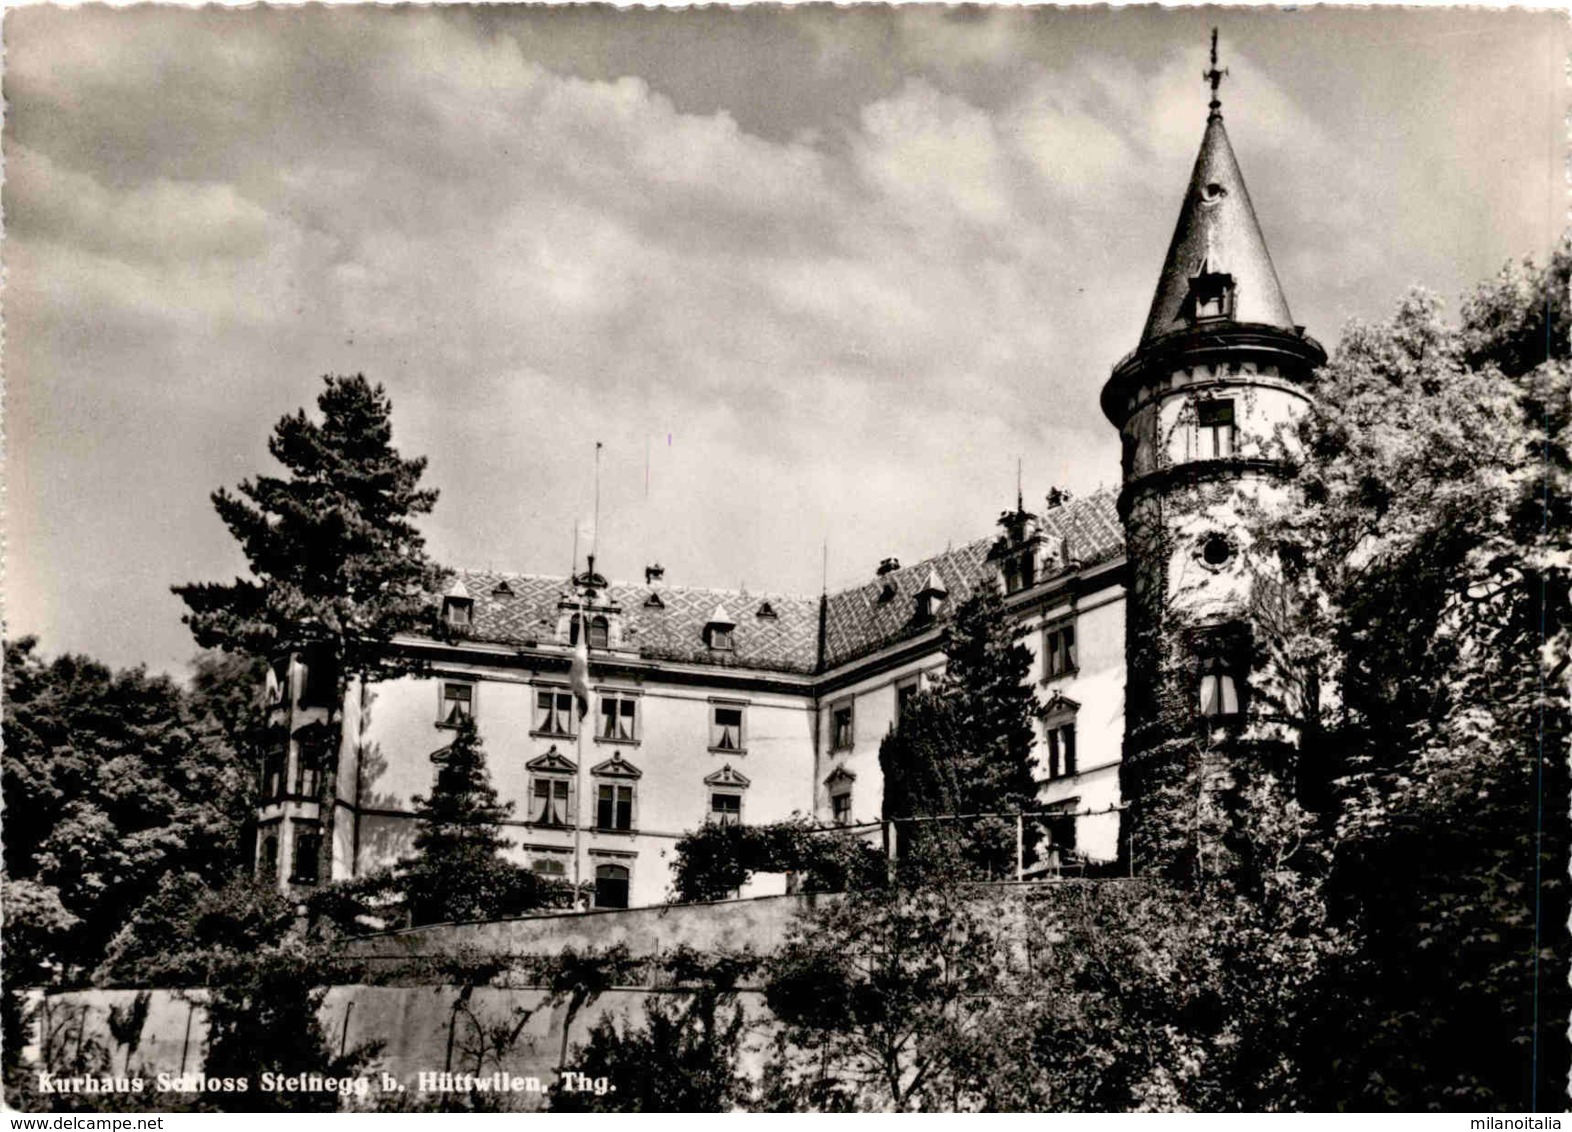 Kurhaus Schloss Steinegg B. Hüttwilen Thg. (34076) * 6. 8. 1951 - Hüttwilen